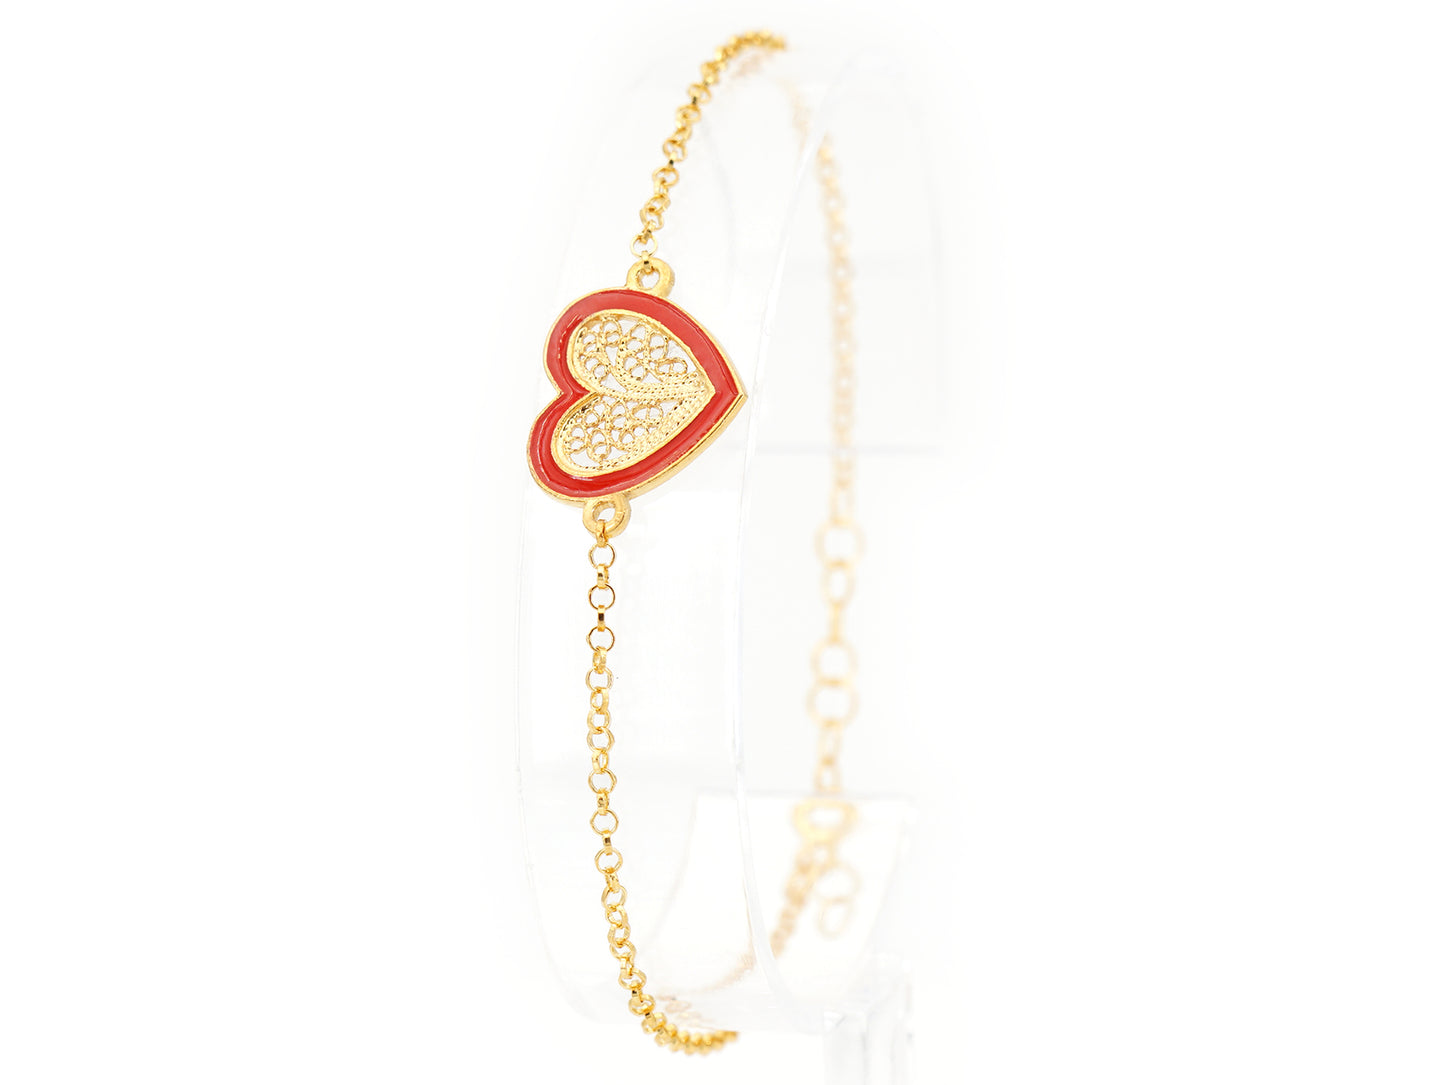 Pulseira Coração Médio Esmalte Vermelho, Filigrana Portuguesa, Prata de Lei 925 Dourada - Pulseira em exposição